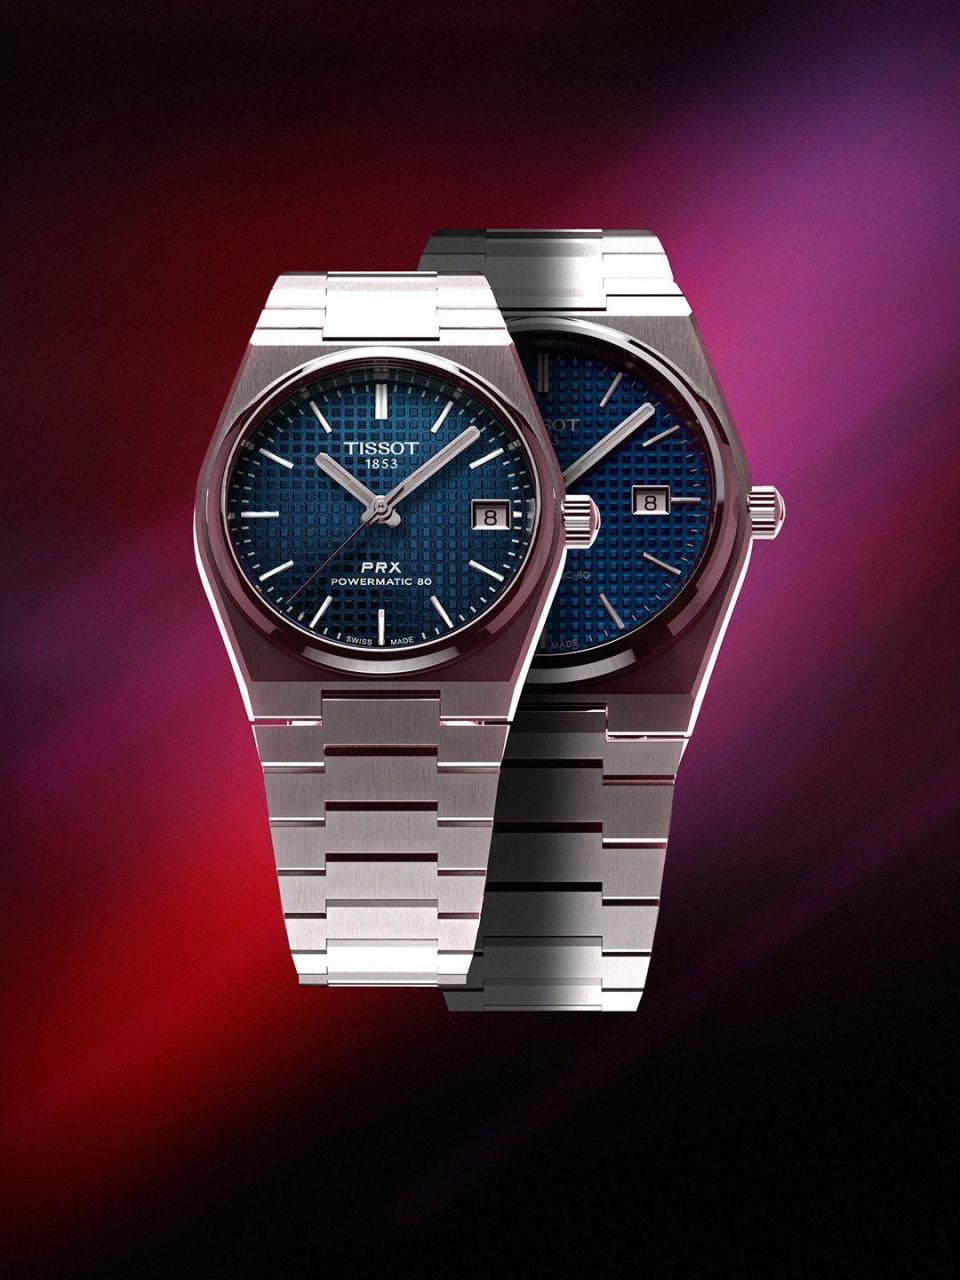 天梭PRX錶款取材自天梭於1978年上市的Seastar Quartz Ref.402050錶款，而當年的錶徑是34.5mm，因此35mm尺寸最接近當時的原型。